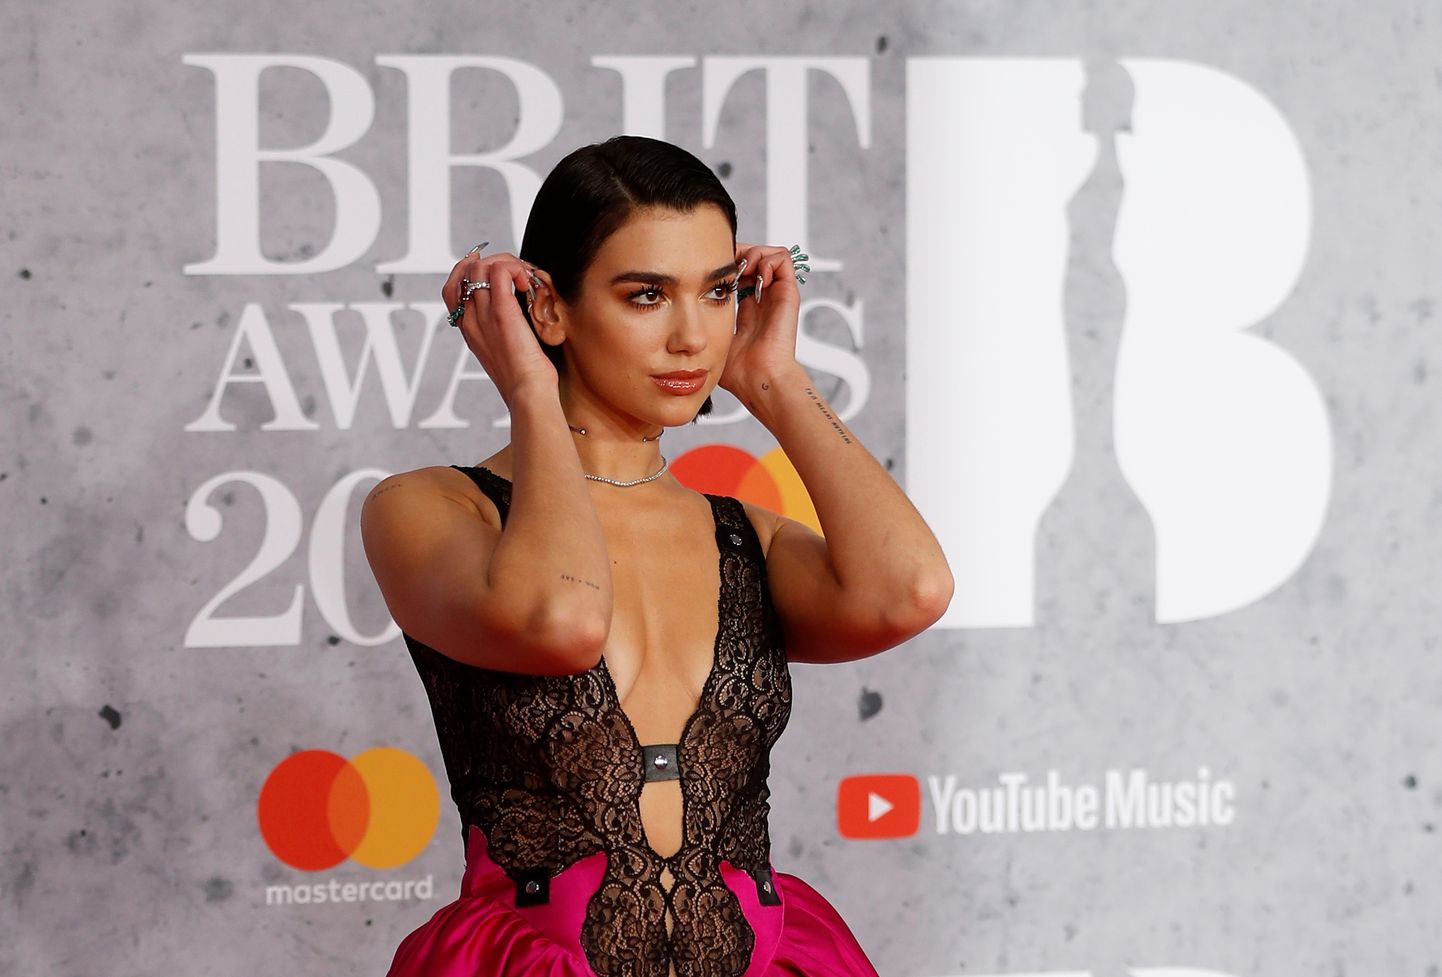 Londonā pasniegtas britu muzikas balvas "Brit Awards"

